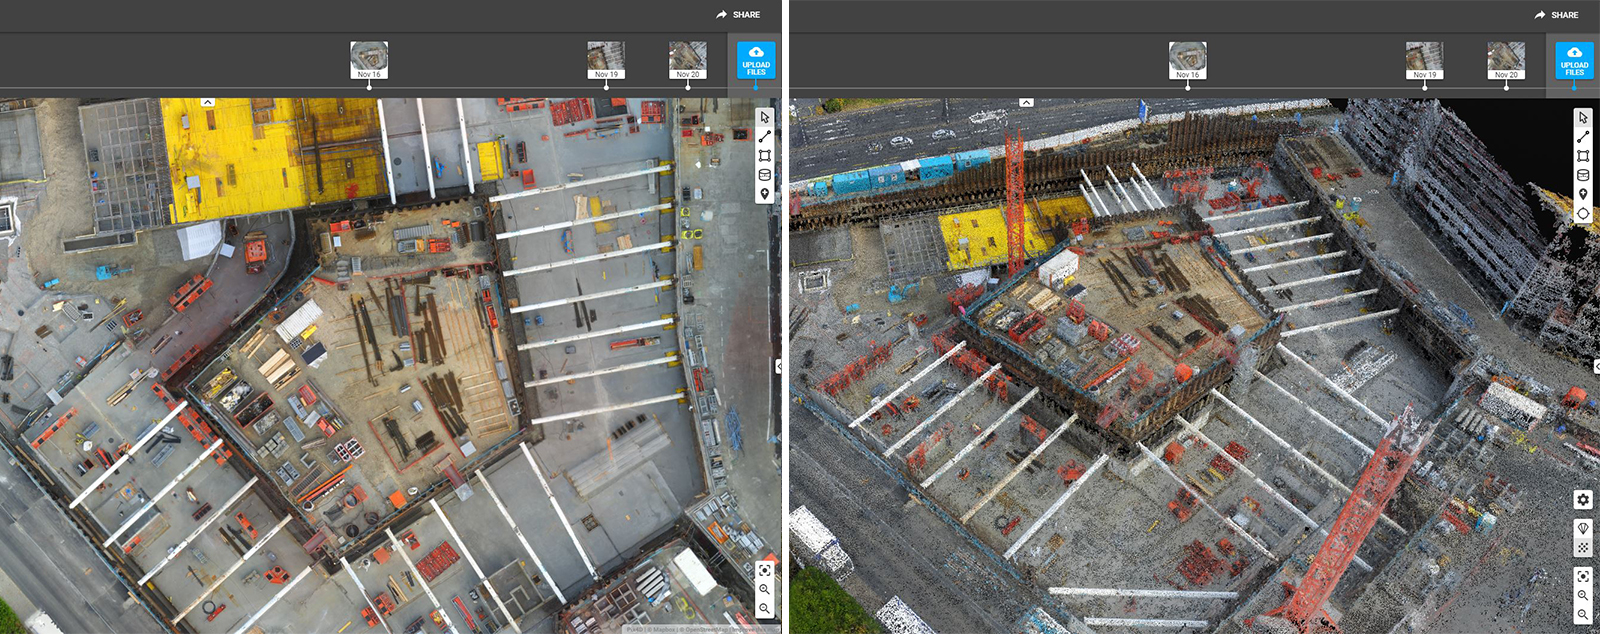 Pix4D Crane Camera produces 2D maps and 3D models